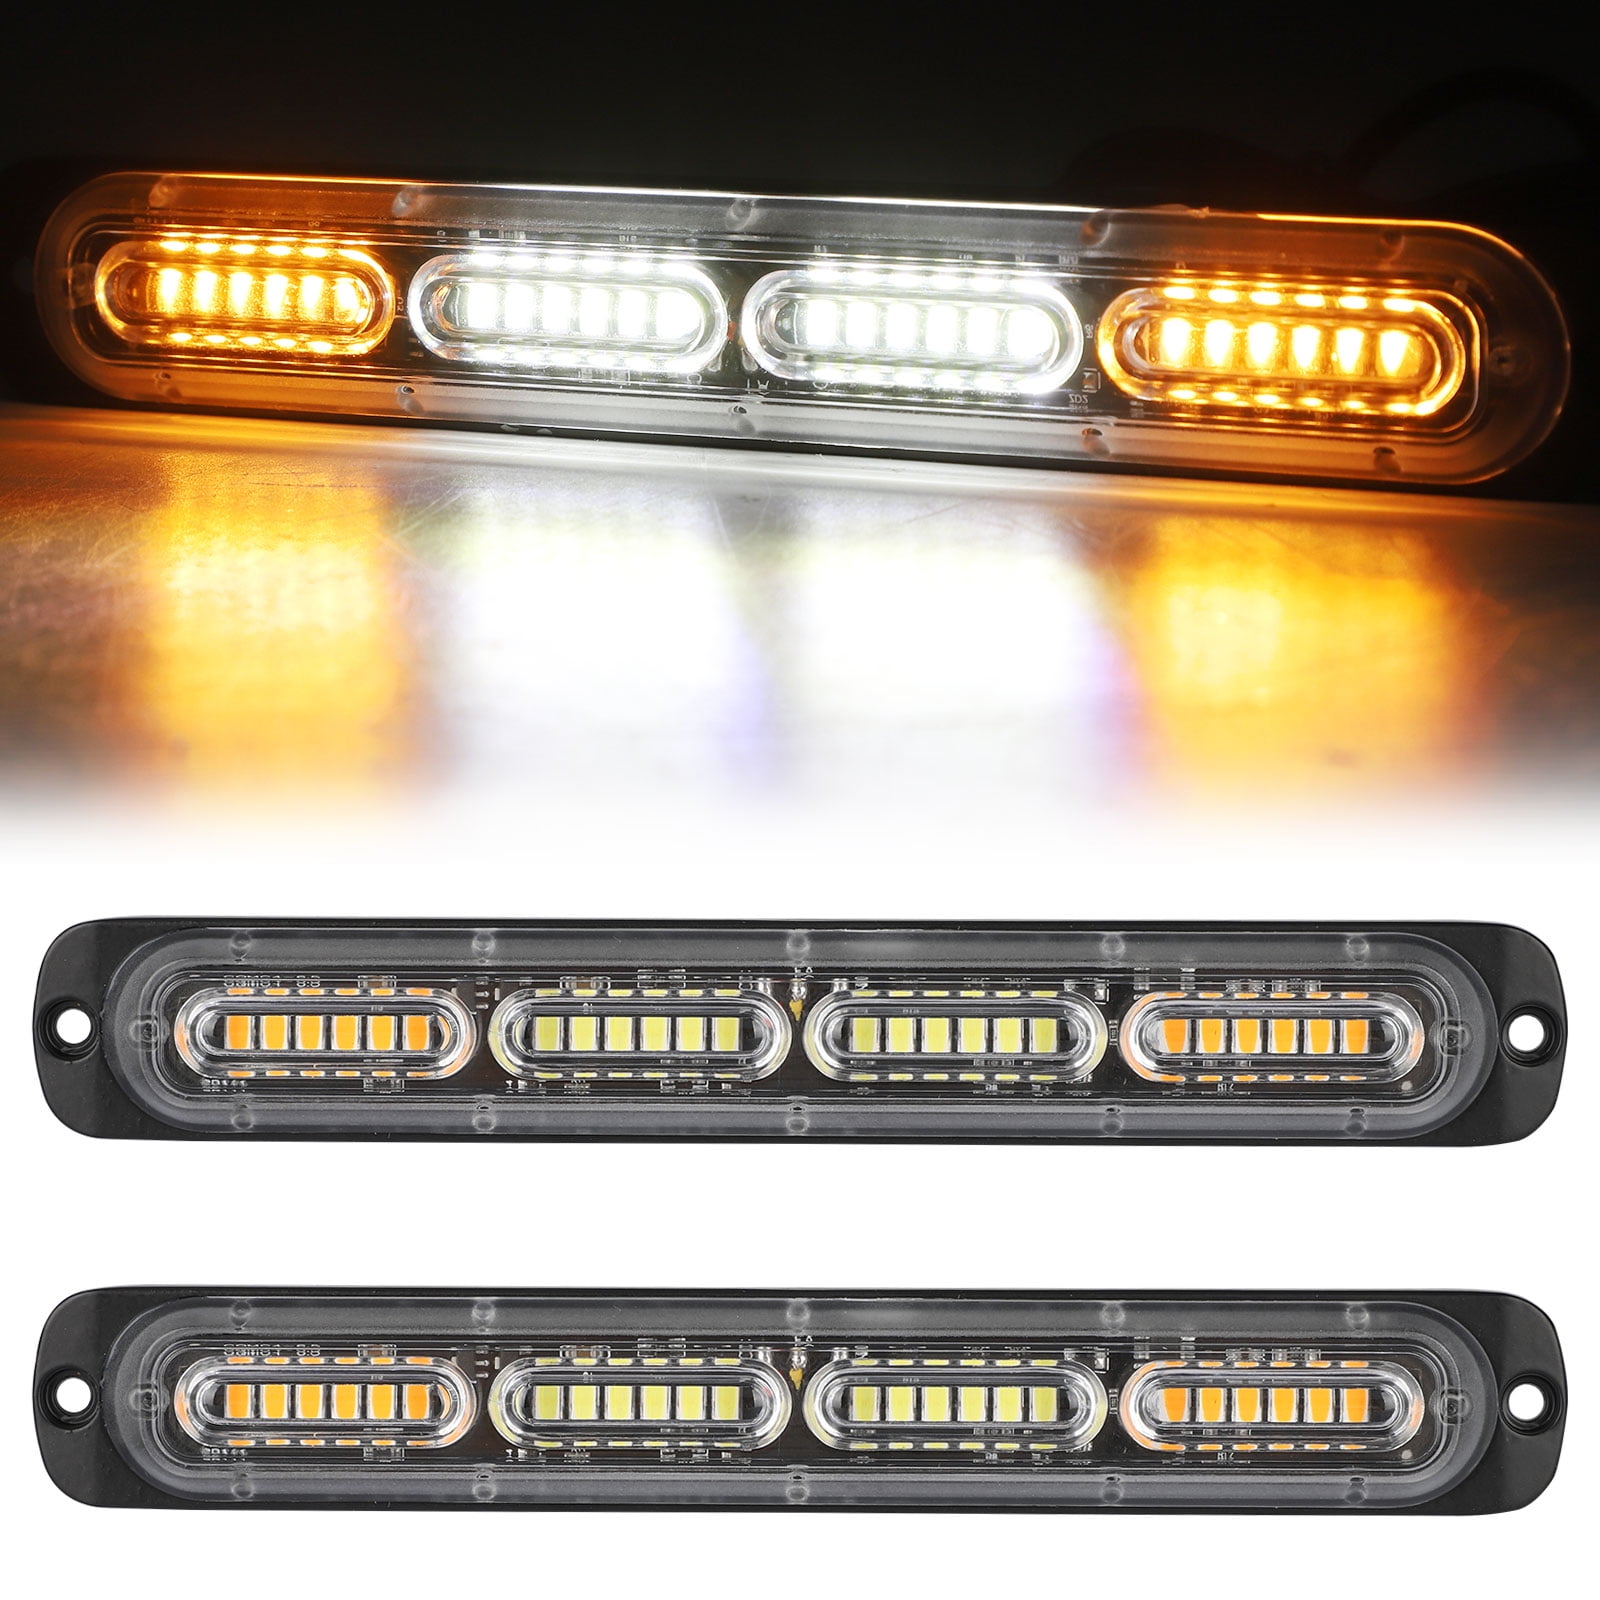 39" 48" 53" Amber LED Warning Emergency Traffic Advisor Truck Strobe Light Bars